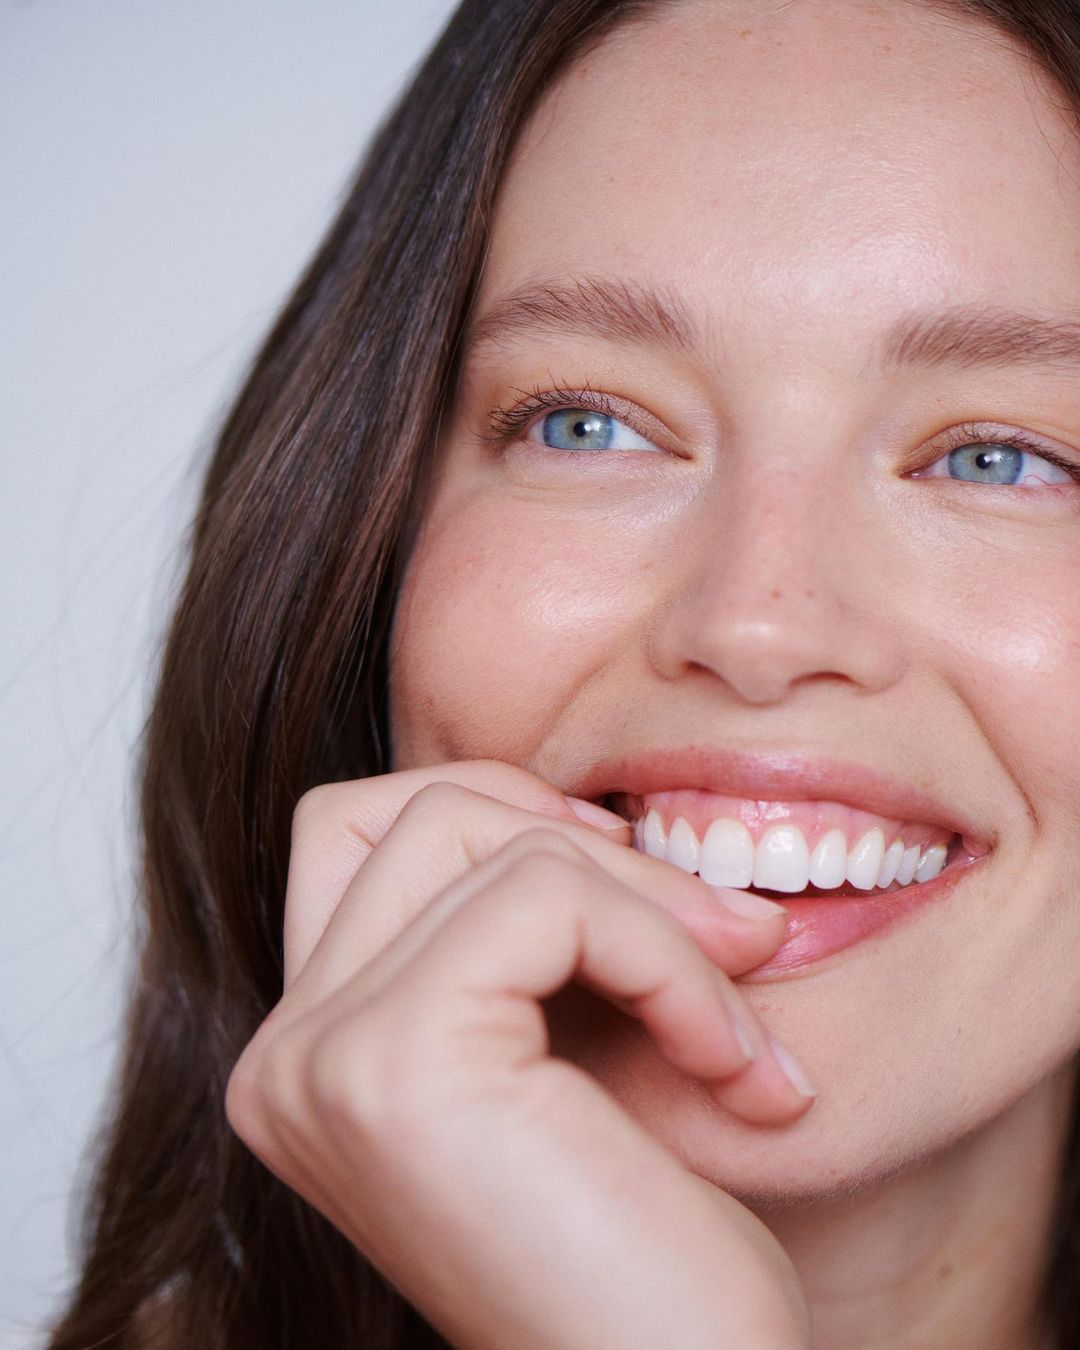 Όμορφη χωρίς μακιγιάζ: 10 συμβουλές ομορφιάς από ένα μοντέλο για υγιή και λαμπερή επιδερμίδα 